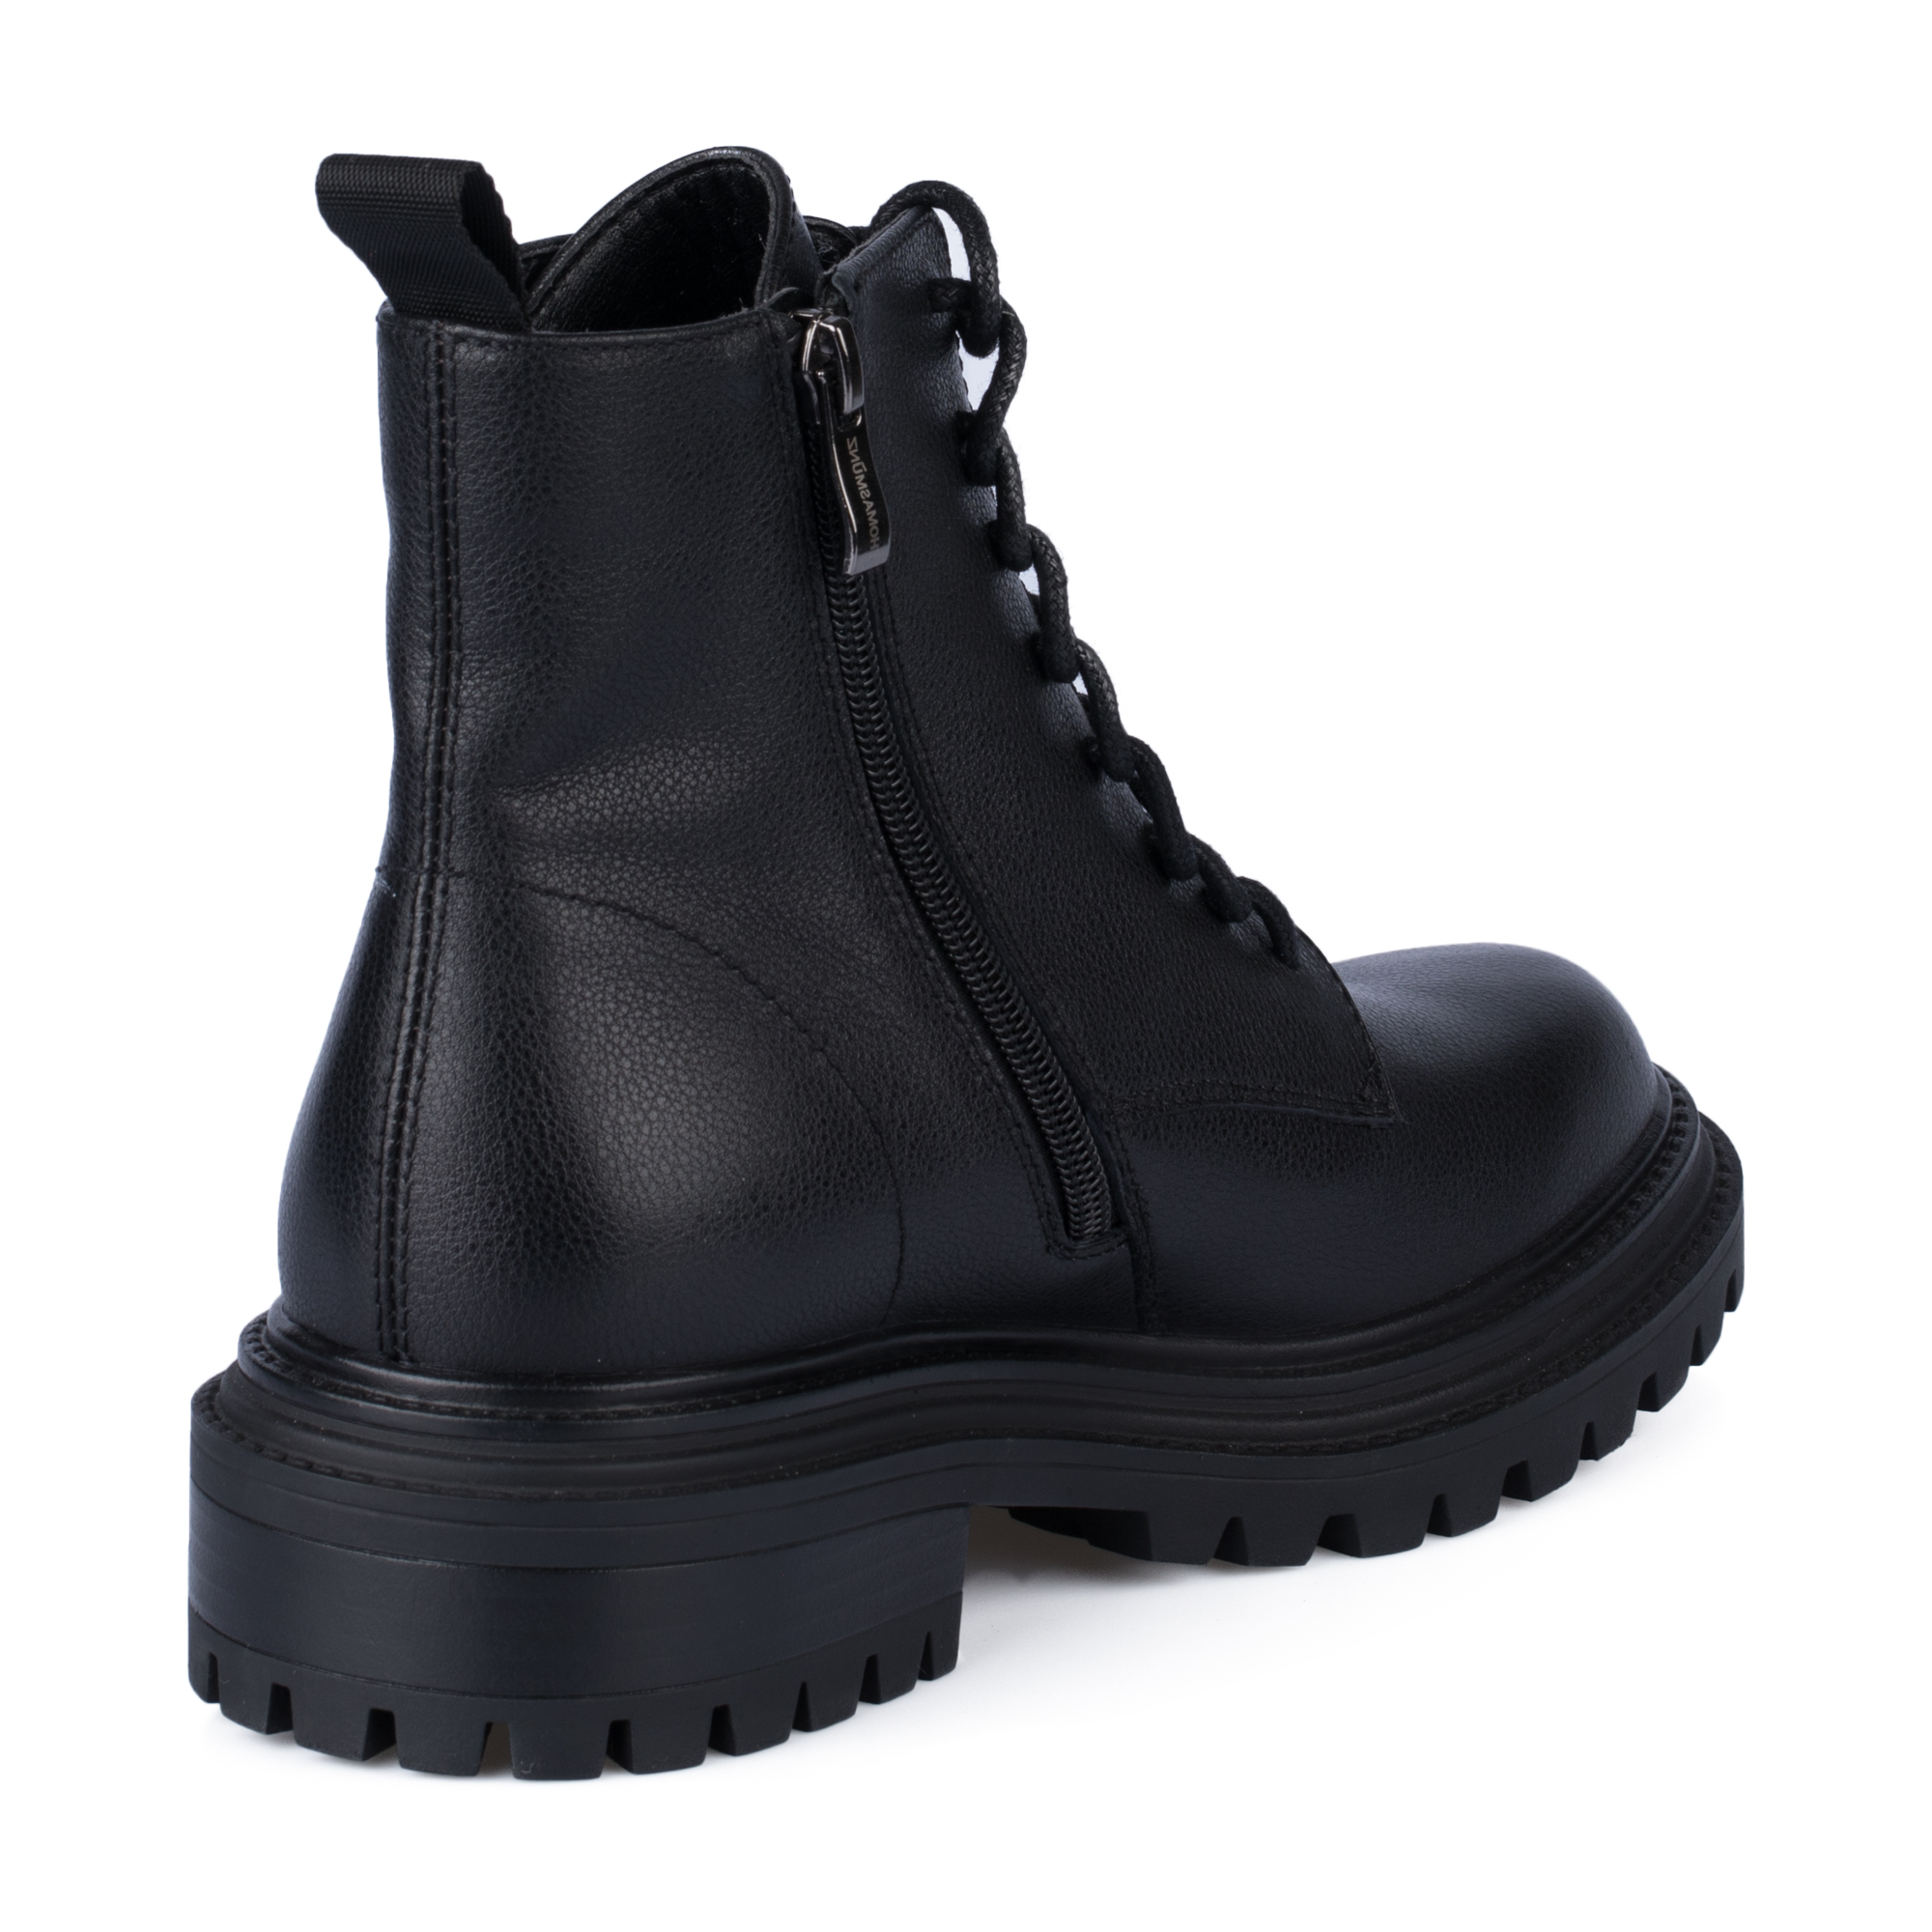 Ботинки Thomas Munz 233-958A-5102, цвет черный, размер 38 - фото 3